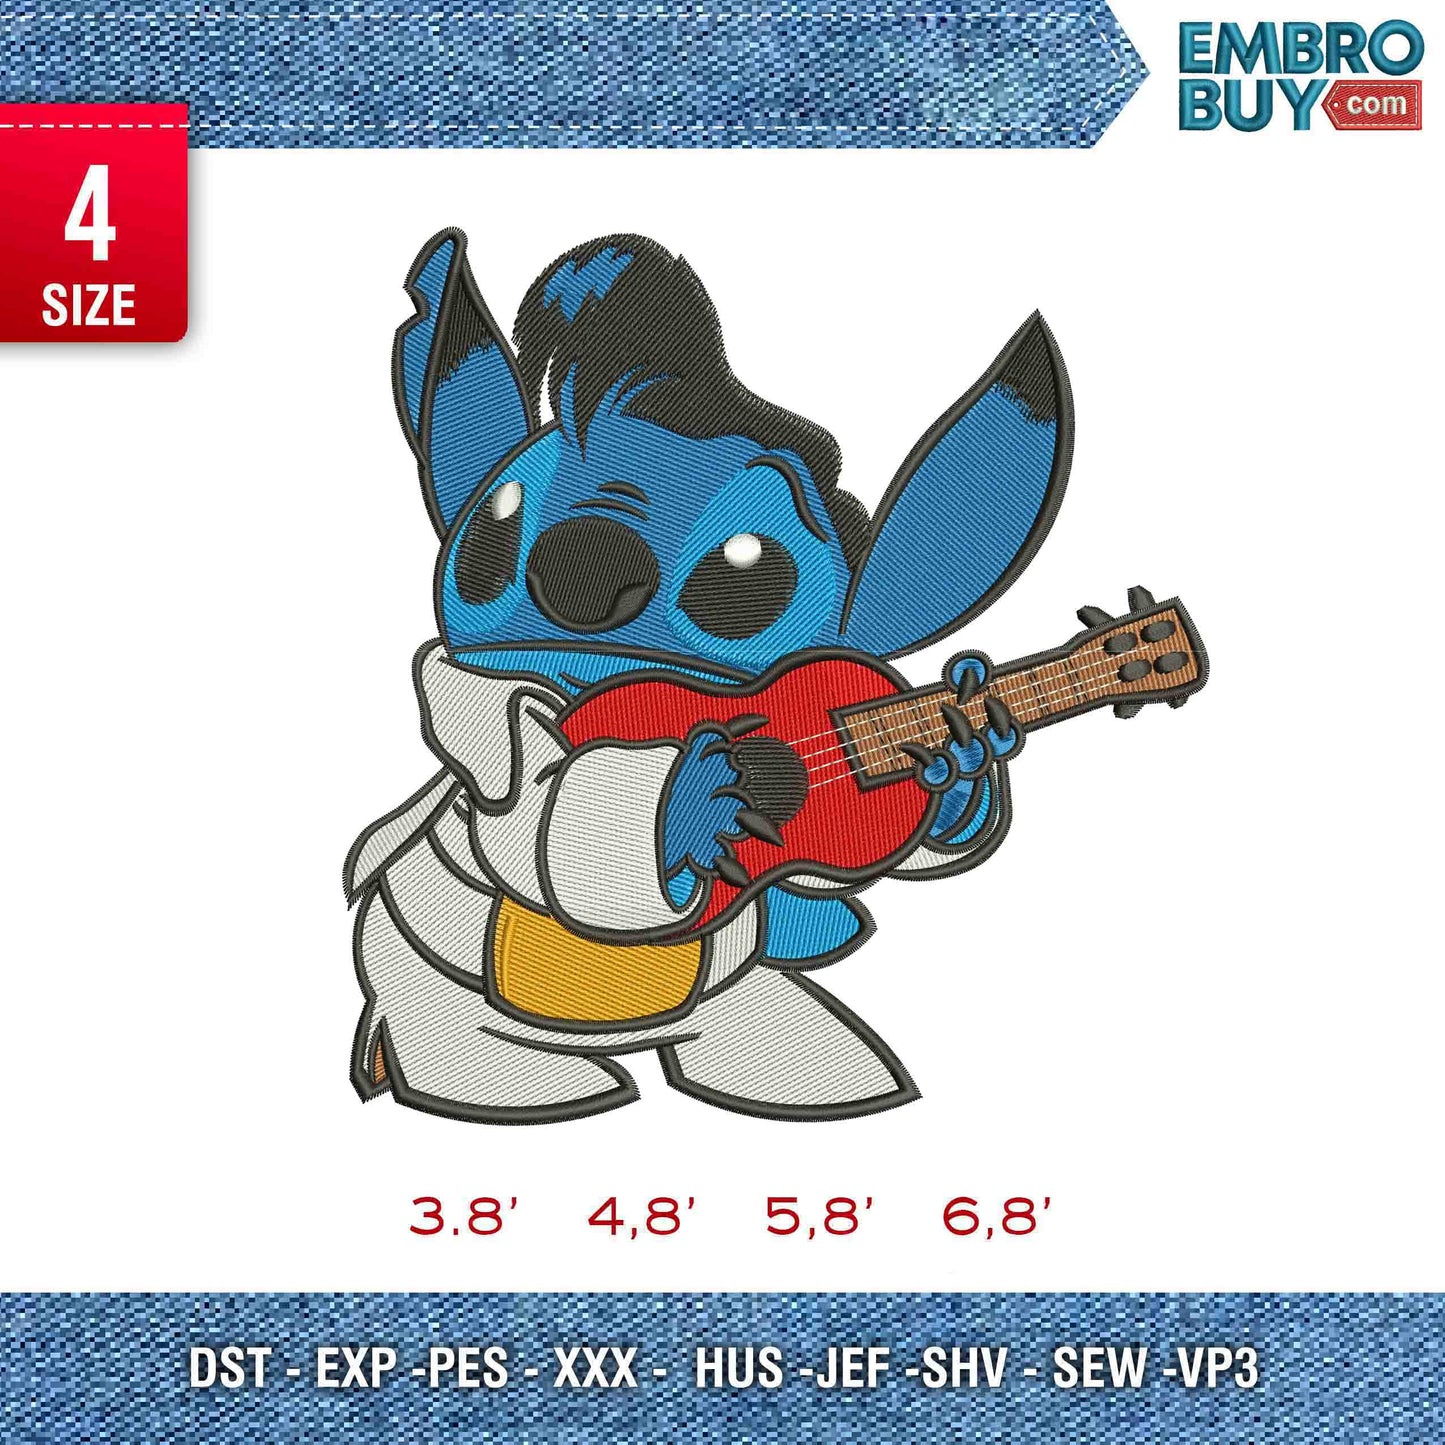 Stitch with Guitar